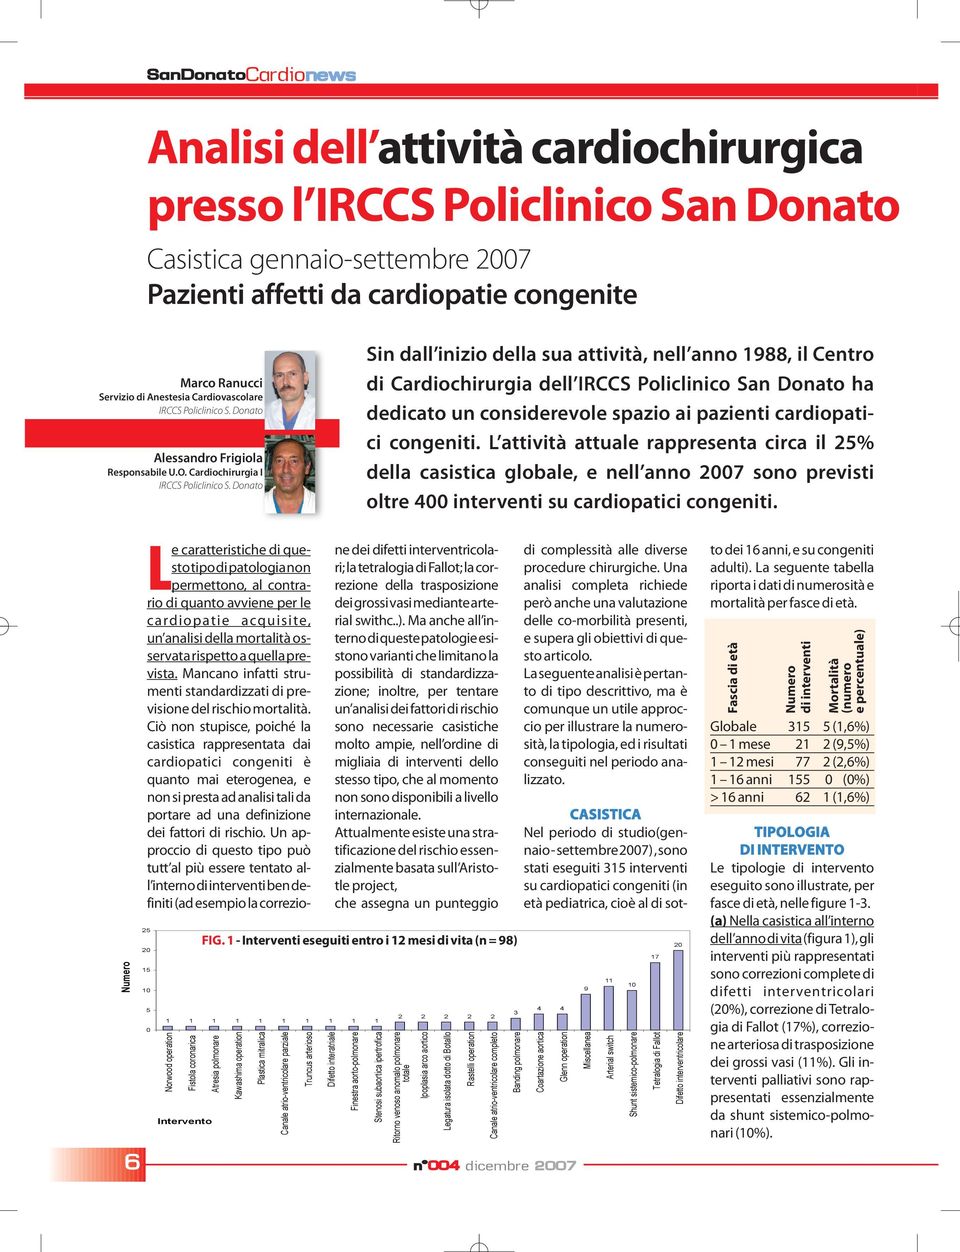 Donato Sin dall inizio della sua attività, nell anno 1988, il Centro di Cardiochirurgia dell IRCCS Policlinico San Donato ha dedicato un considerevole spazio ai pazienti cardiopatici congeniti.